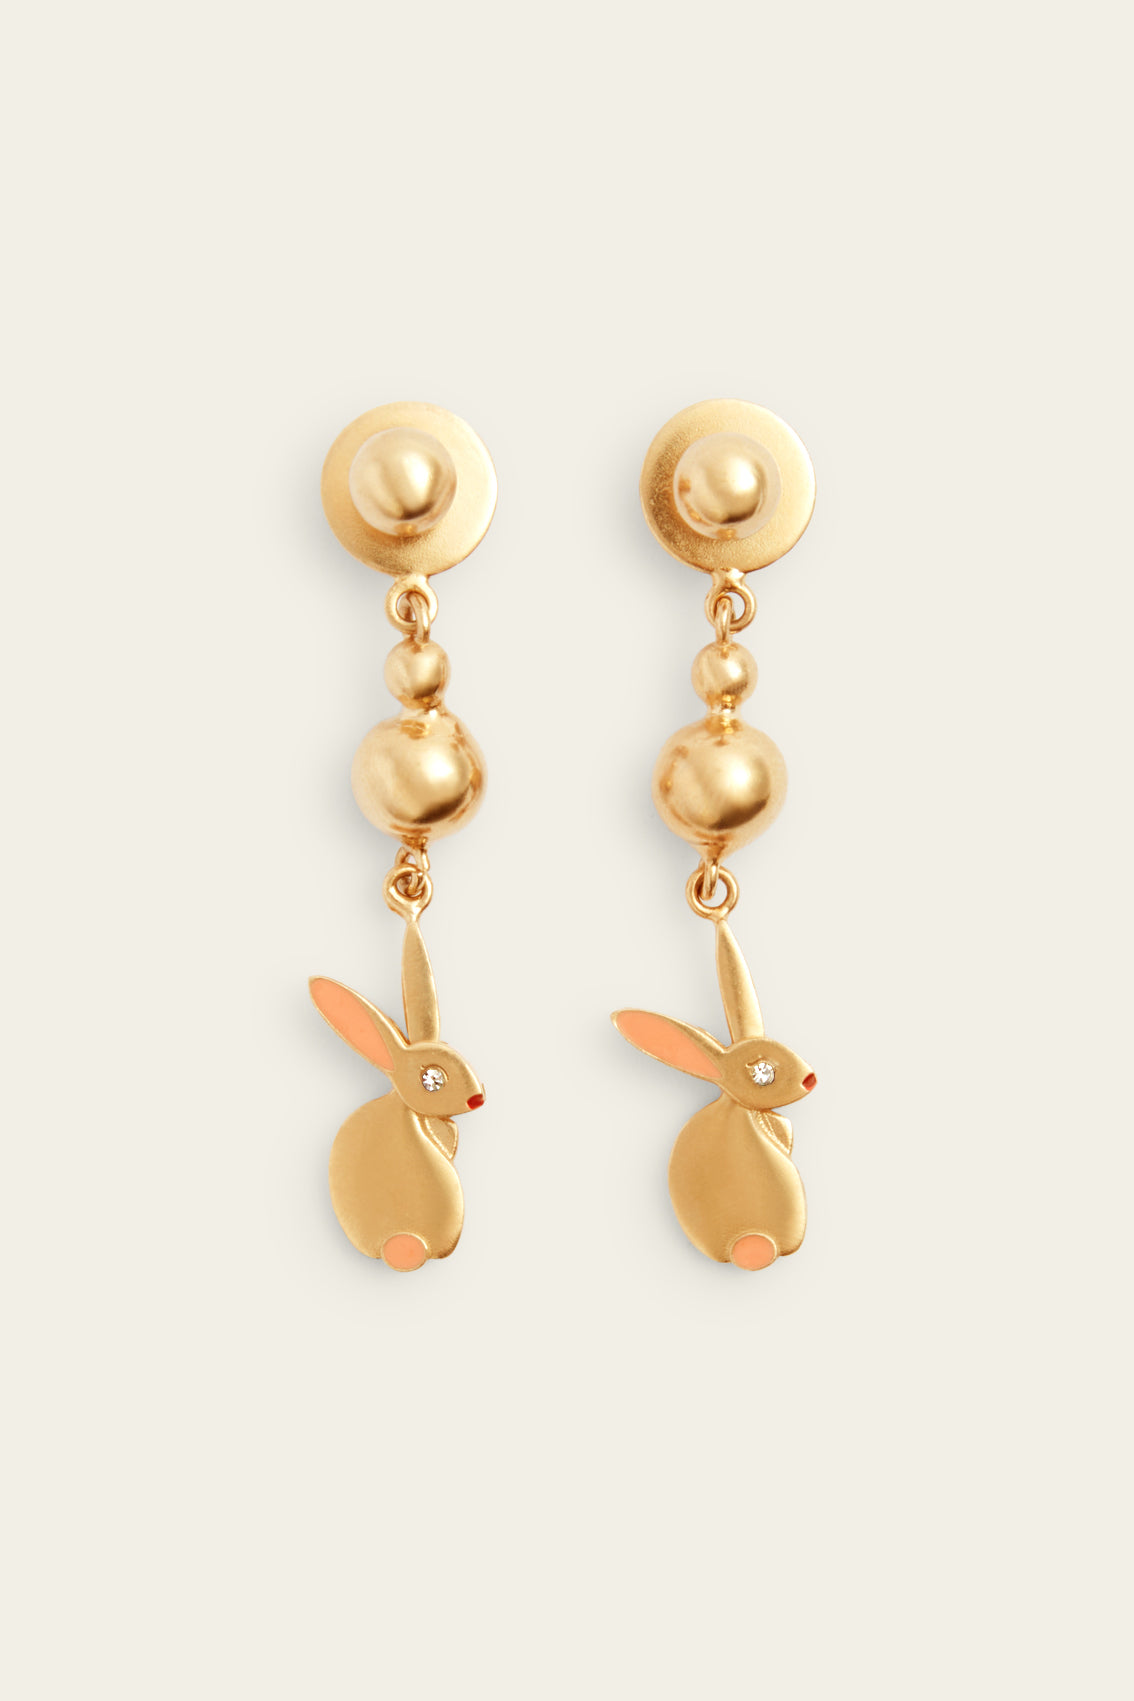 Golden Rabbit Earrings